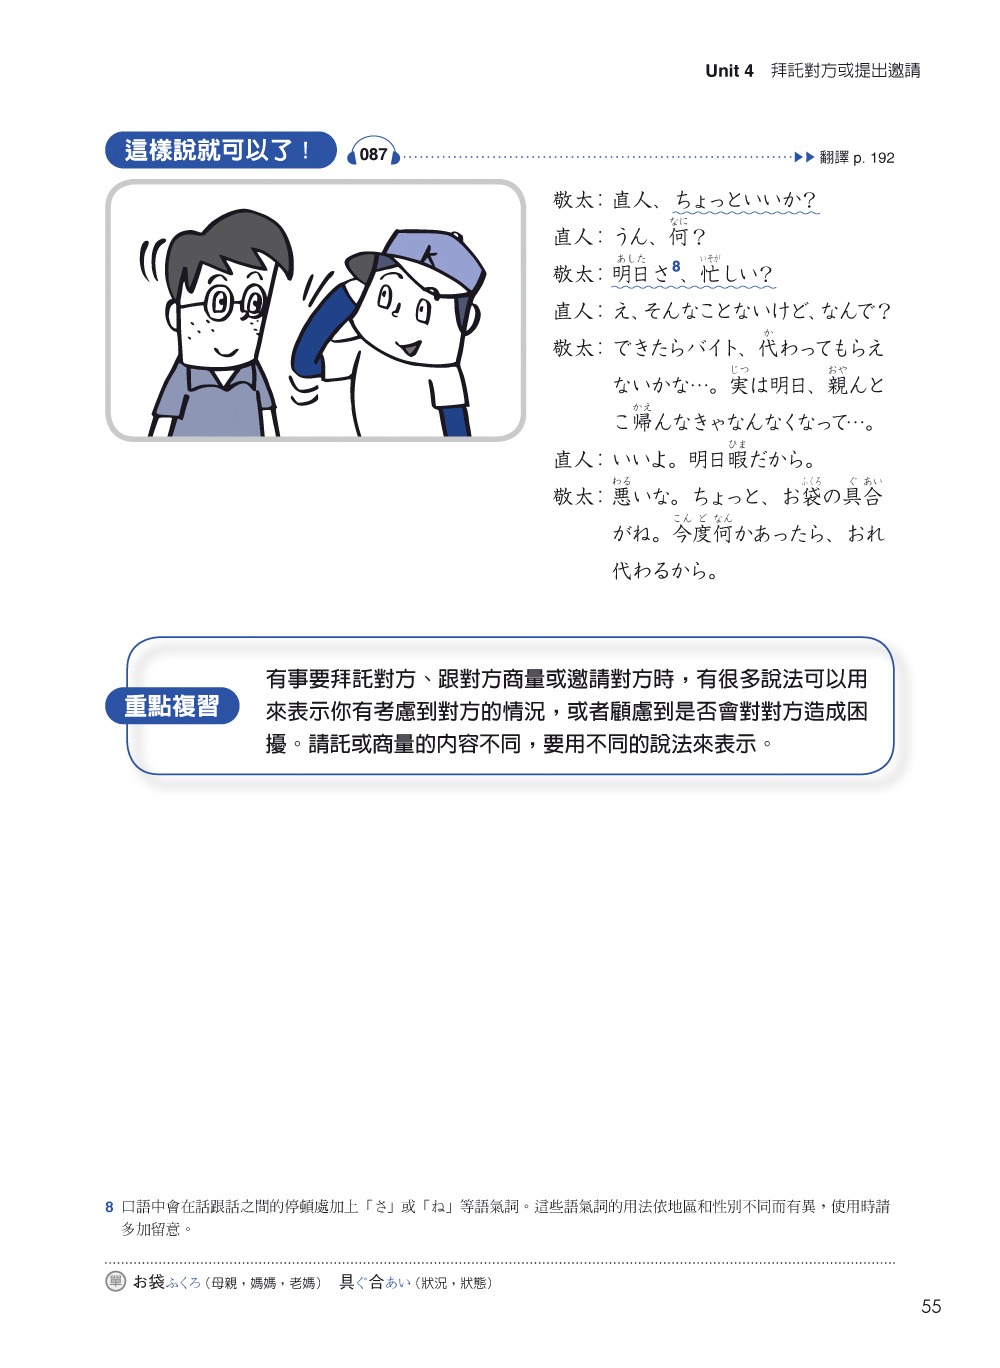 ►語言學習►暢銷書► 日本語會話上手：這種時候、那個場合，日本人怎麼說？